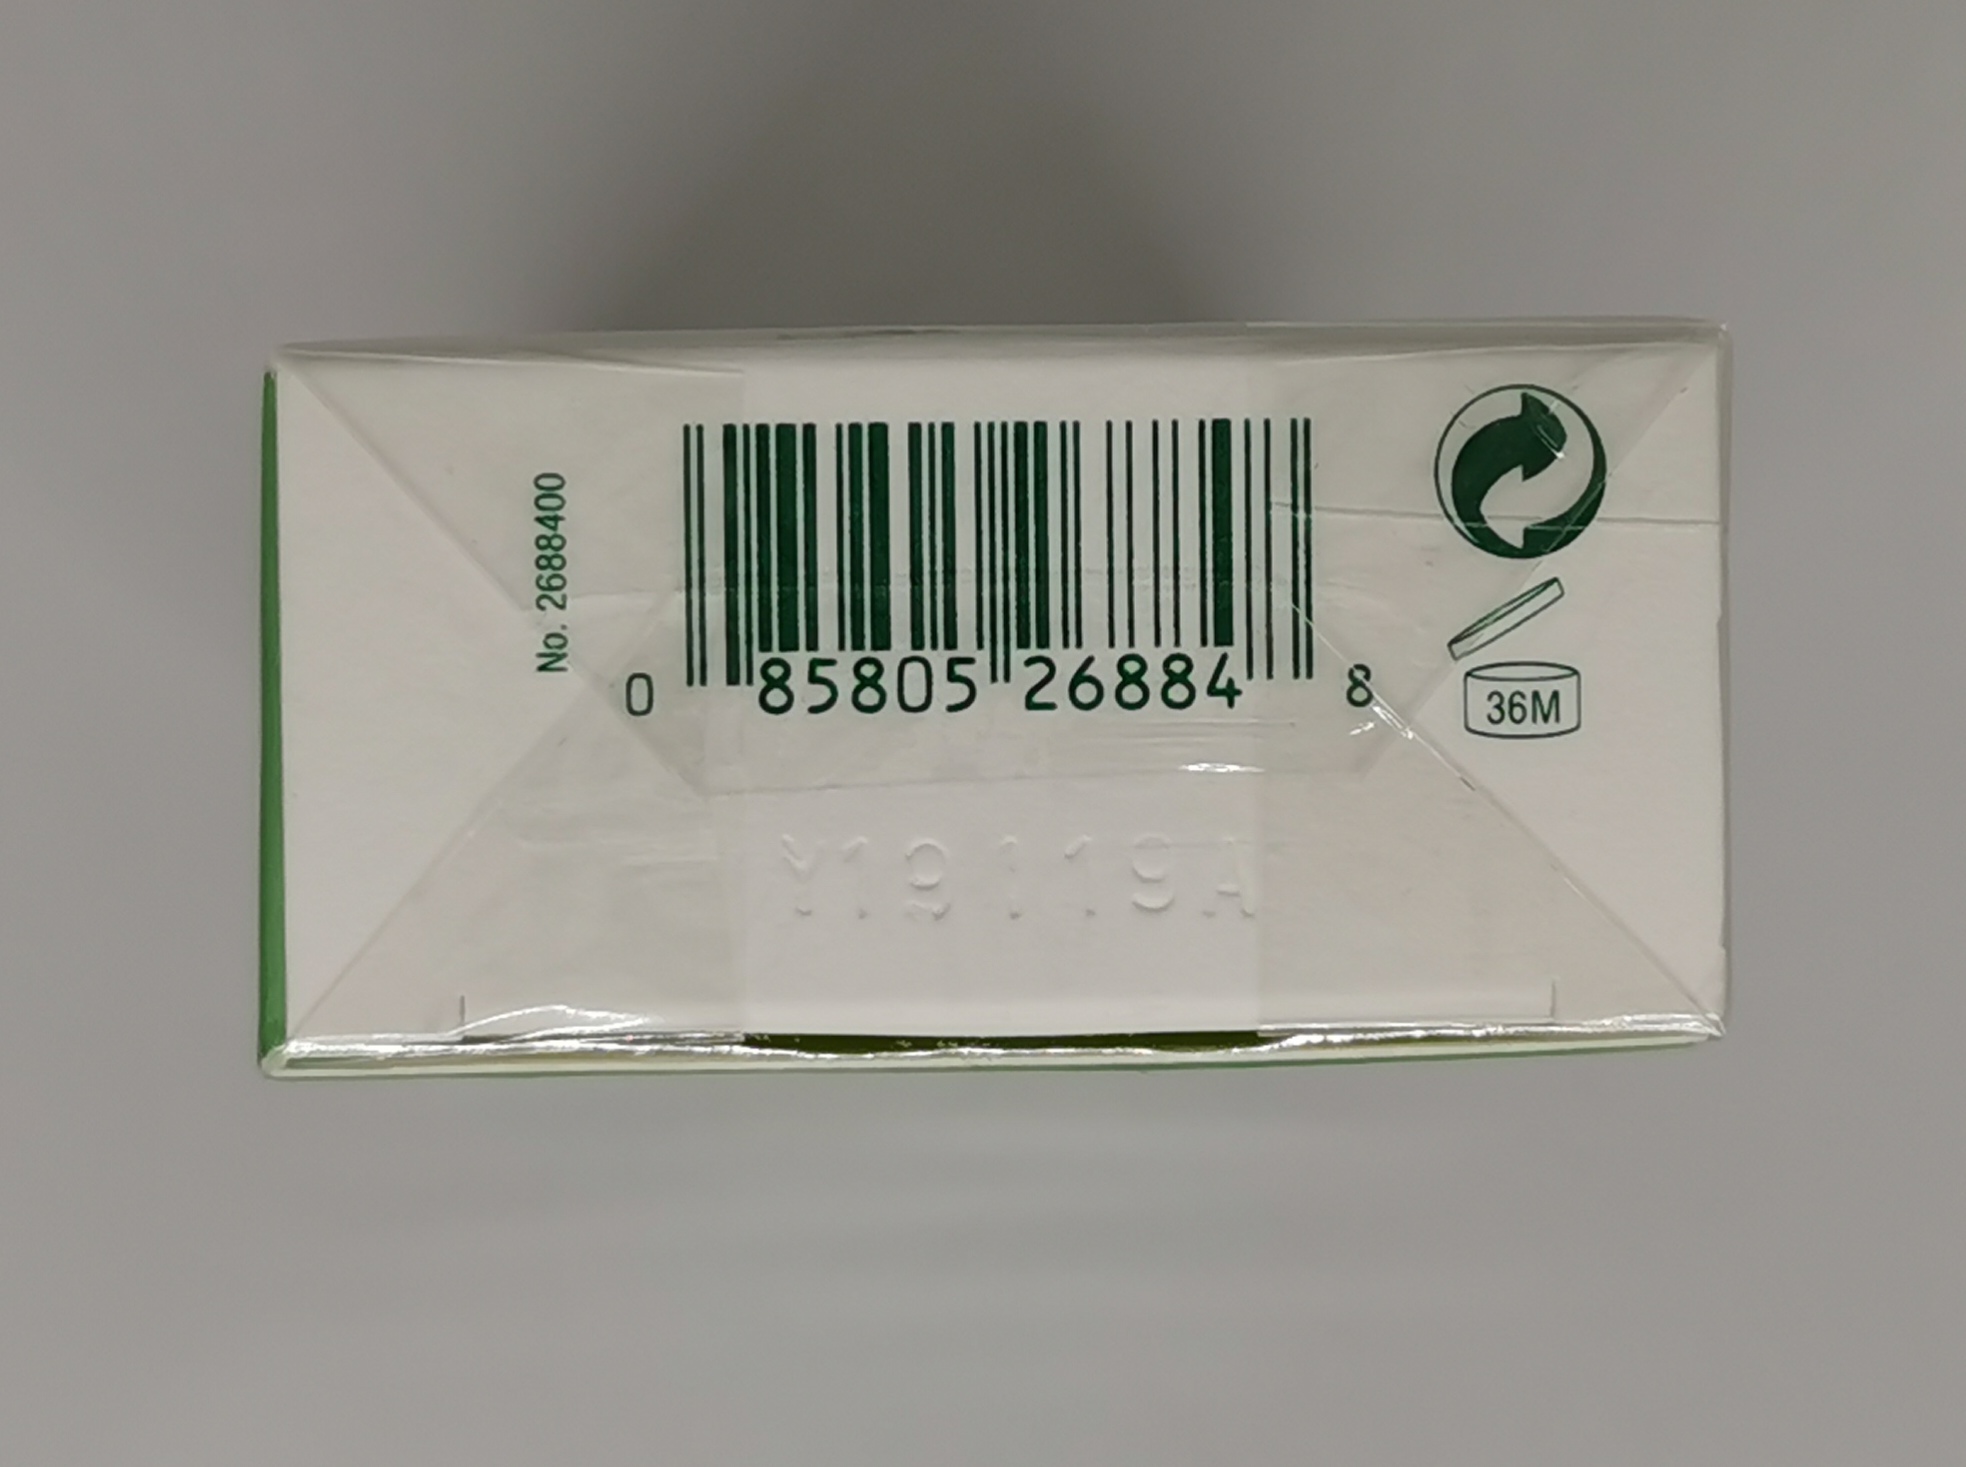 Парфюмерная вода 100&nbsp;мл - фото штрих-кода и батч-кода на коробке